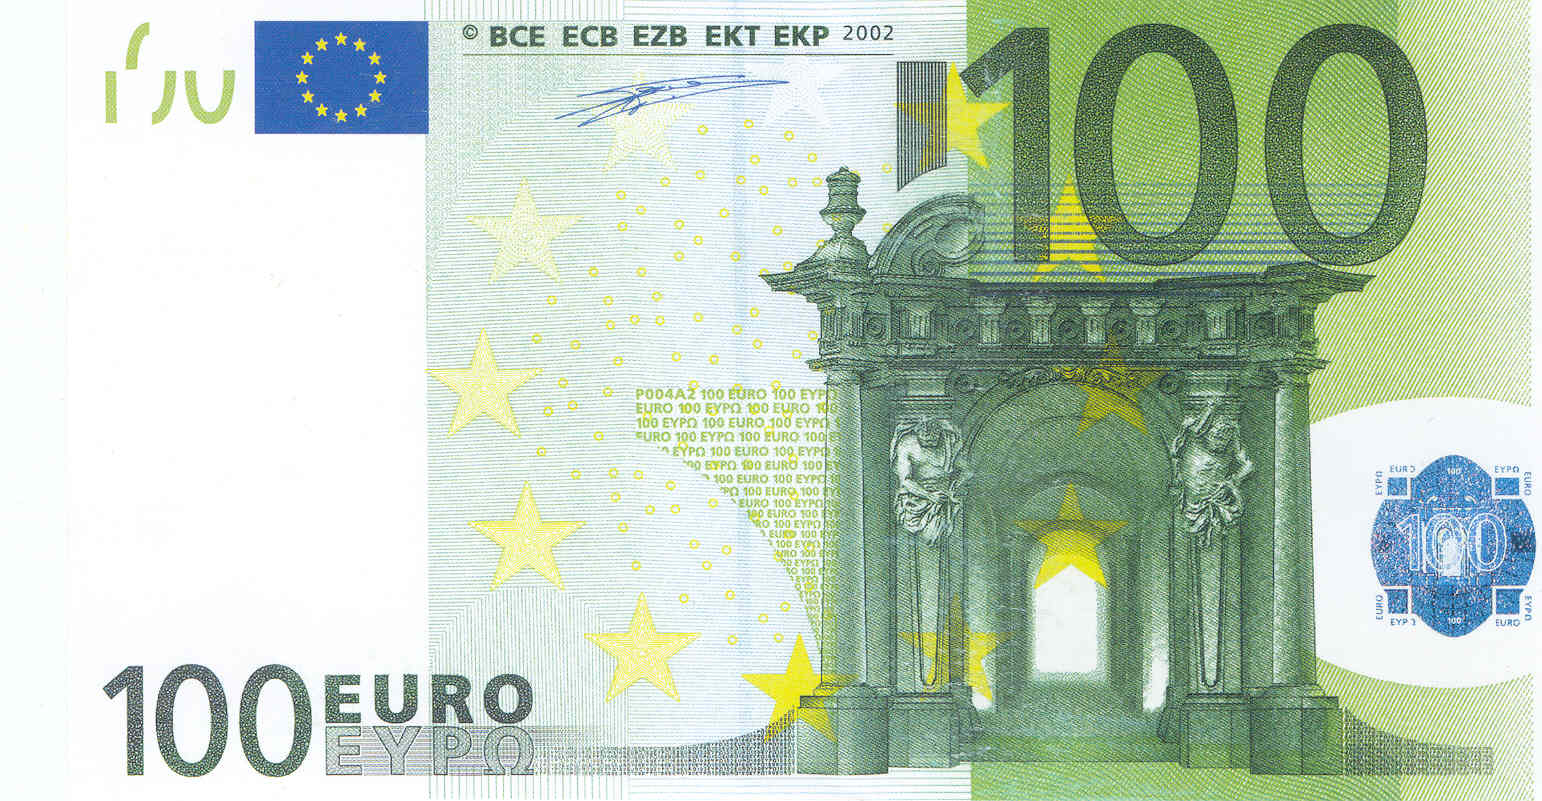 Банкнота 2002 года номиналом 100 евро: цвет – зеленый, архитектурный стиль – барокко. Источник http://raznie.ru/